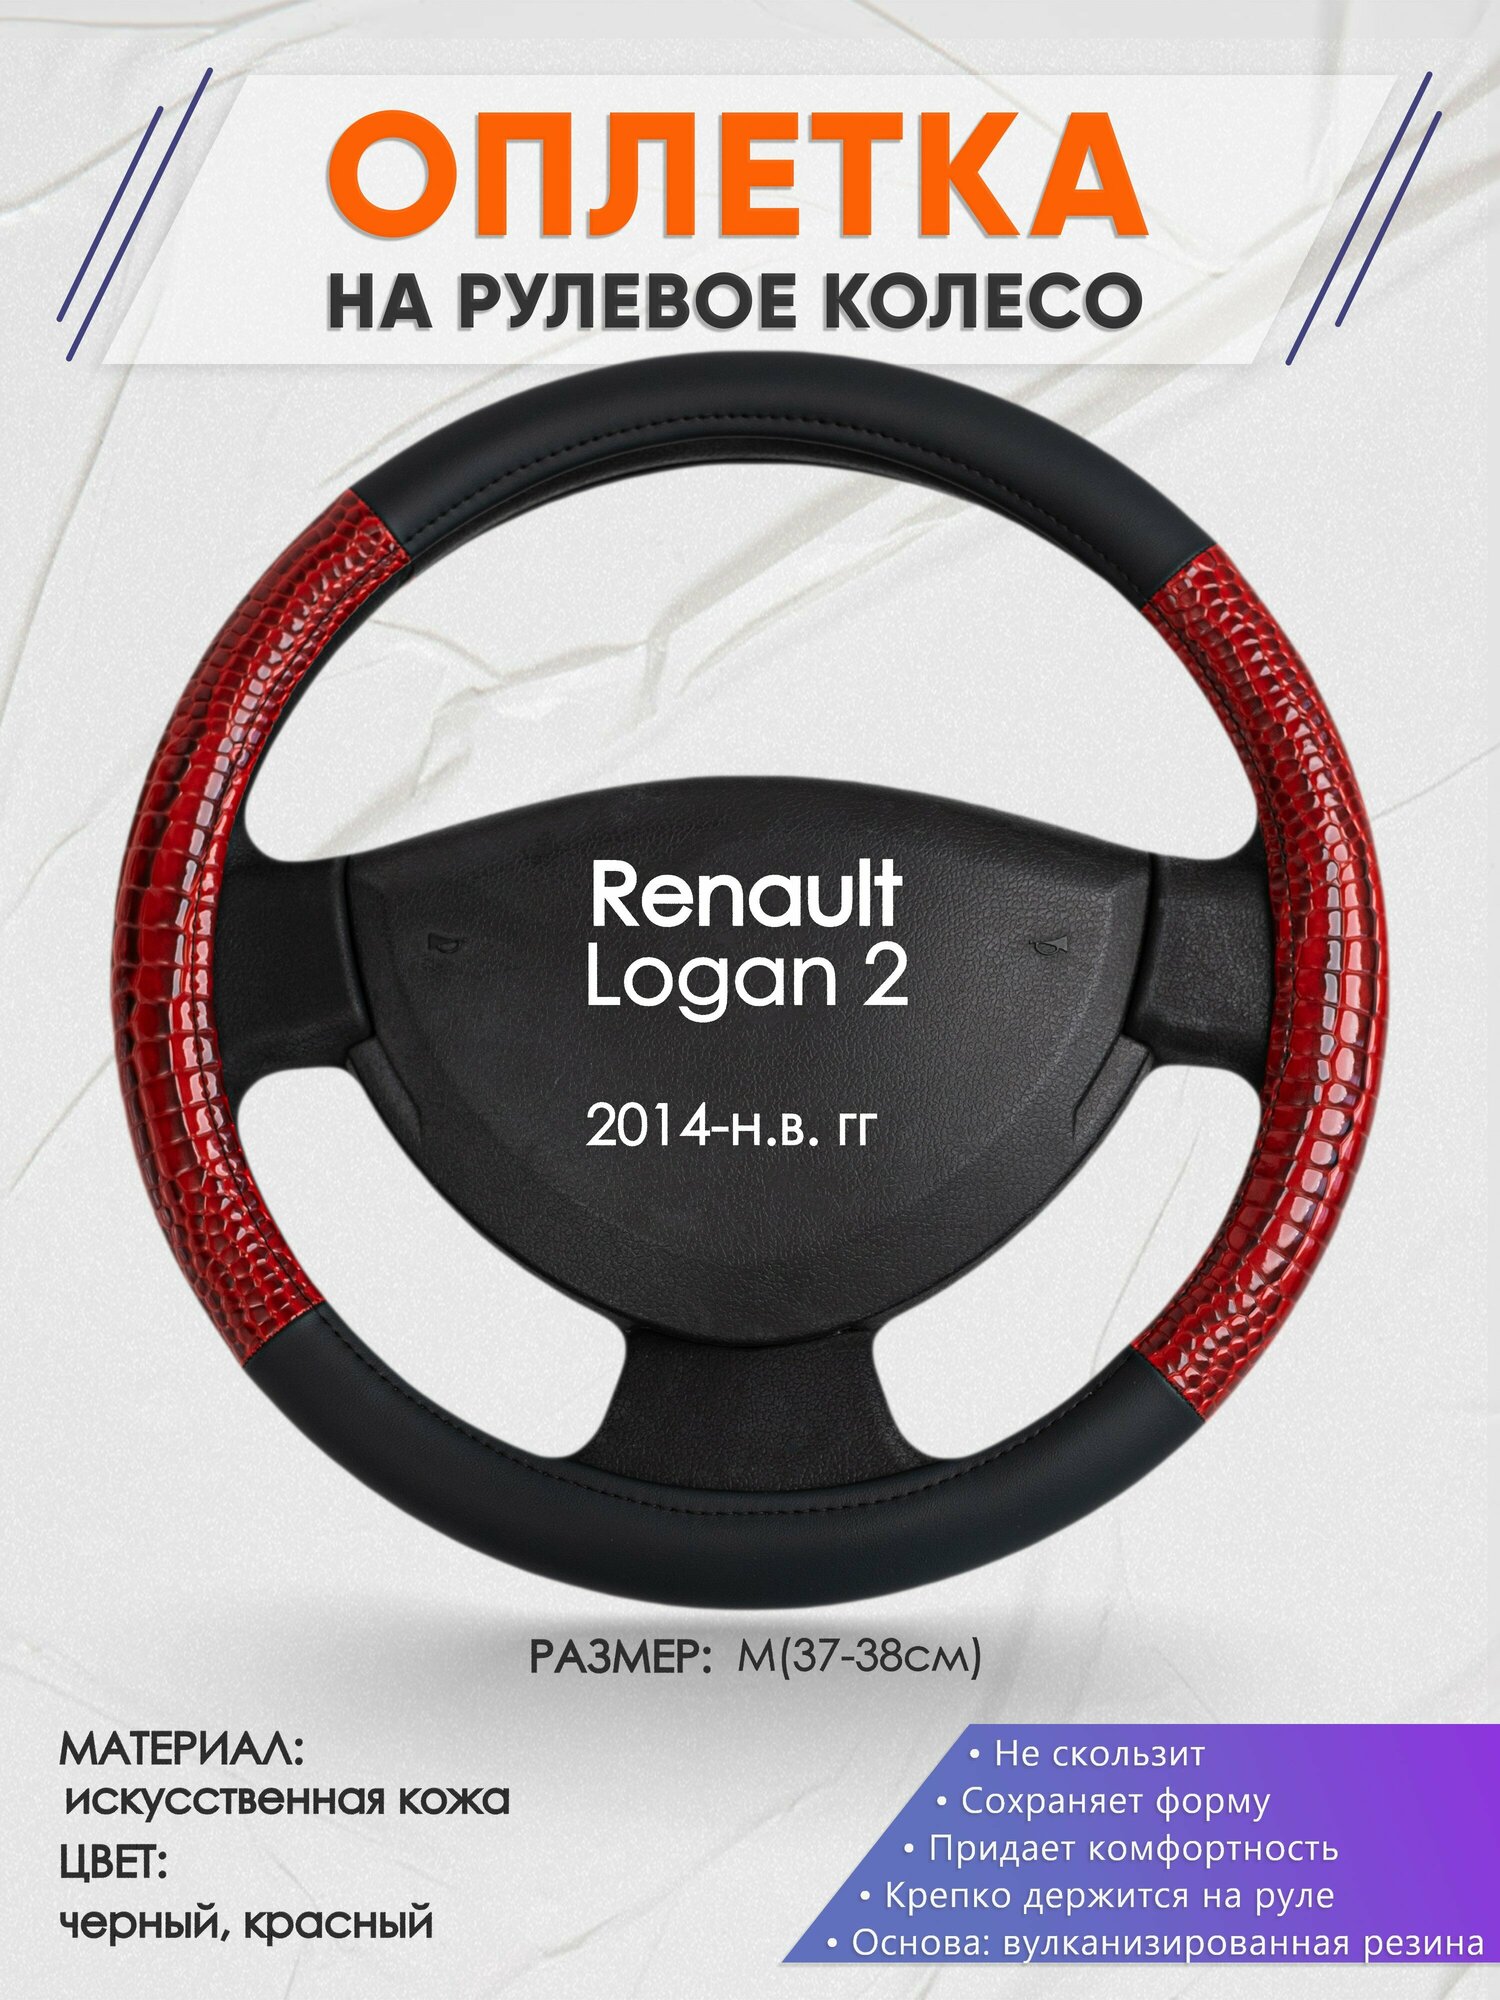 Оплетка на руль для Renault Logan 2(Рено Логан 2) 2014-н. в, M(37-38см), Искусственная кожа 16